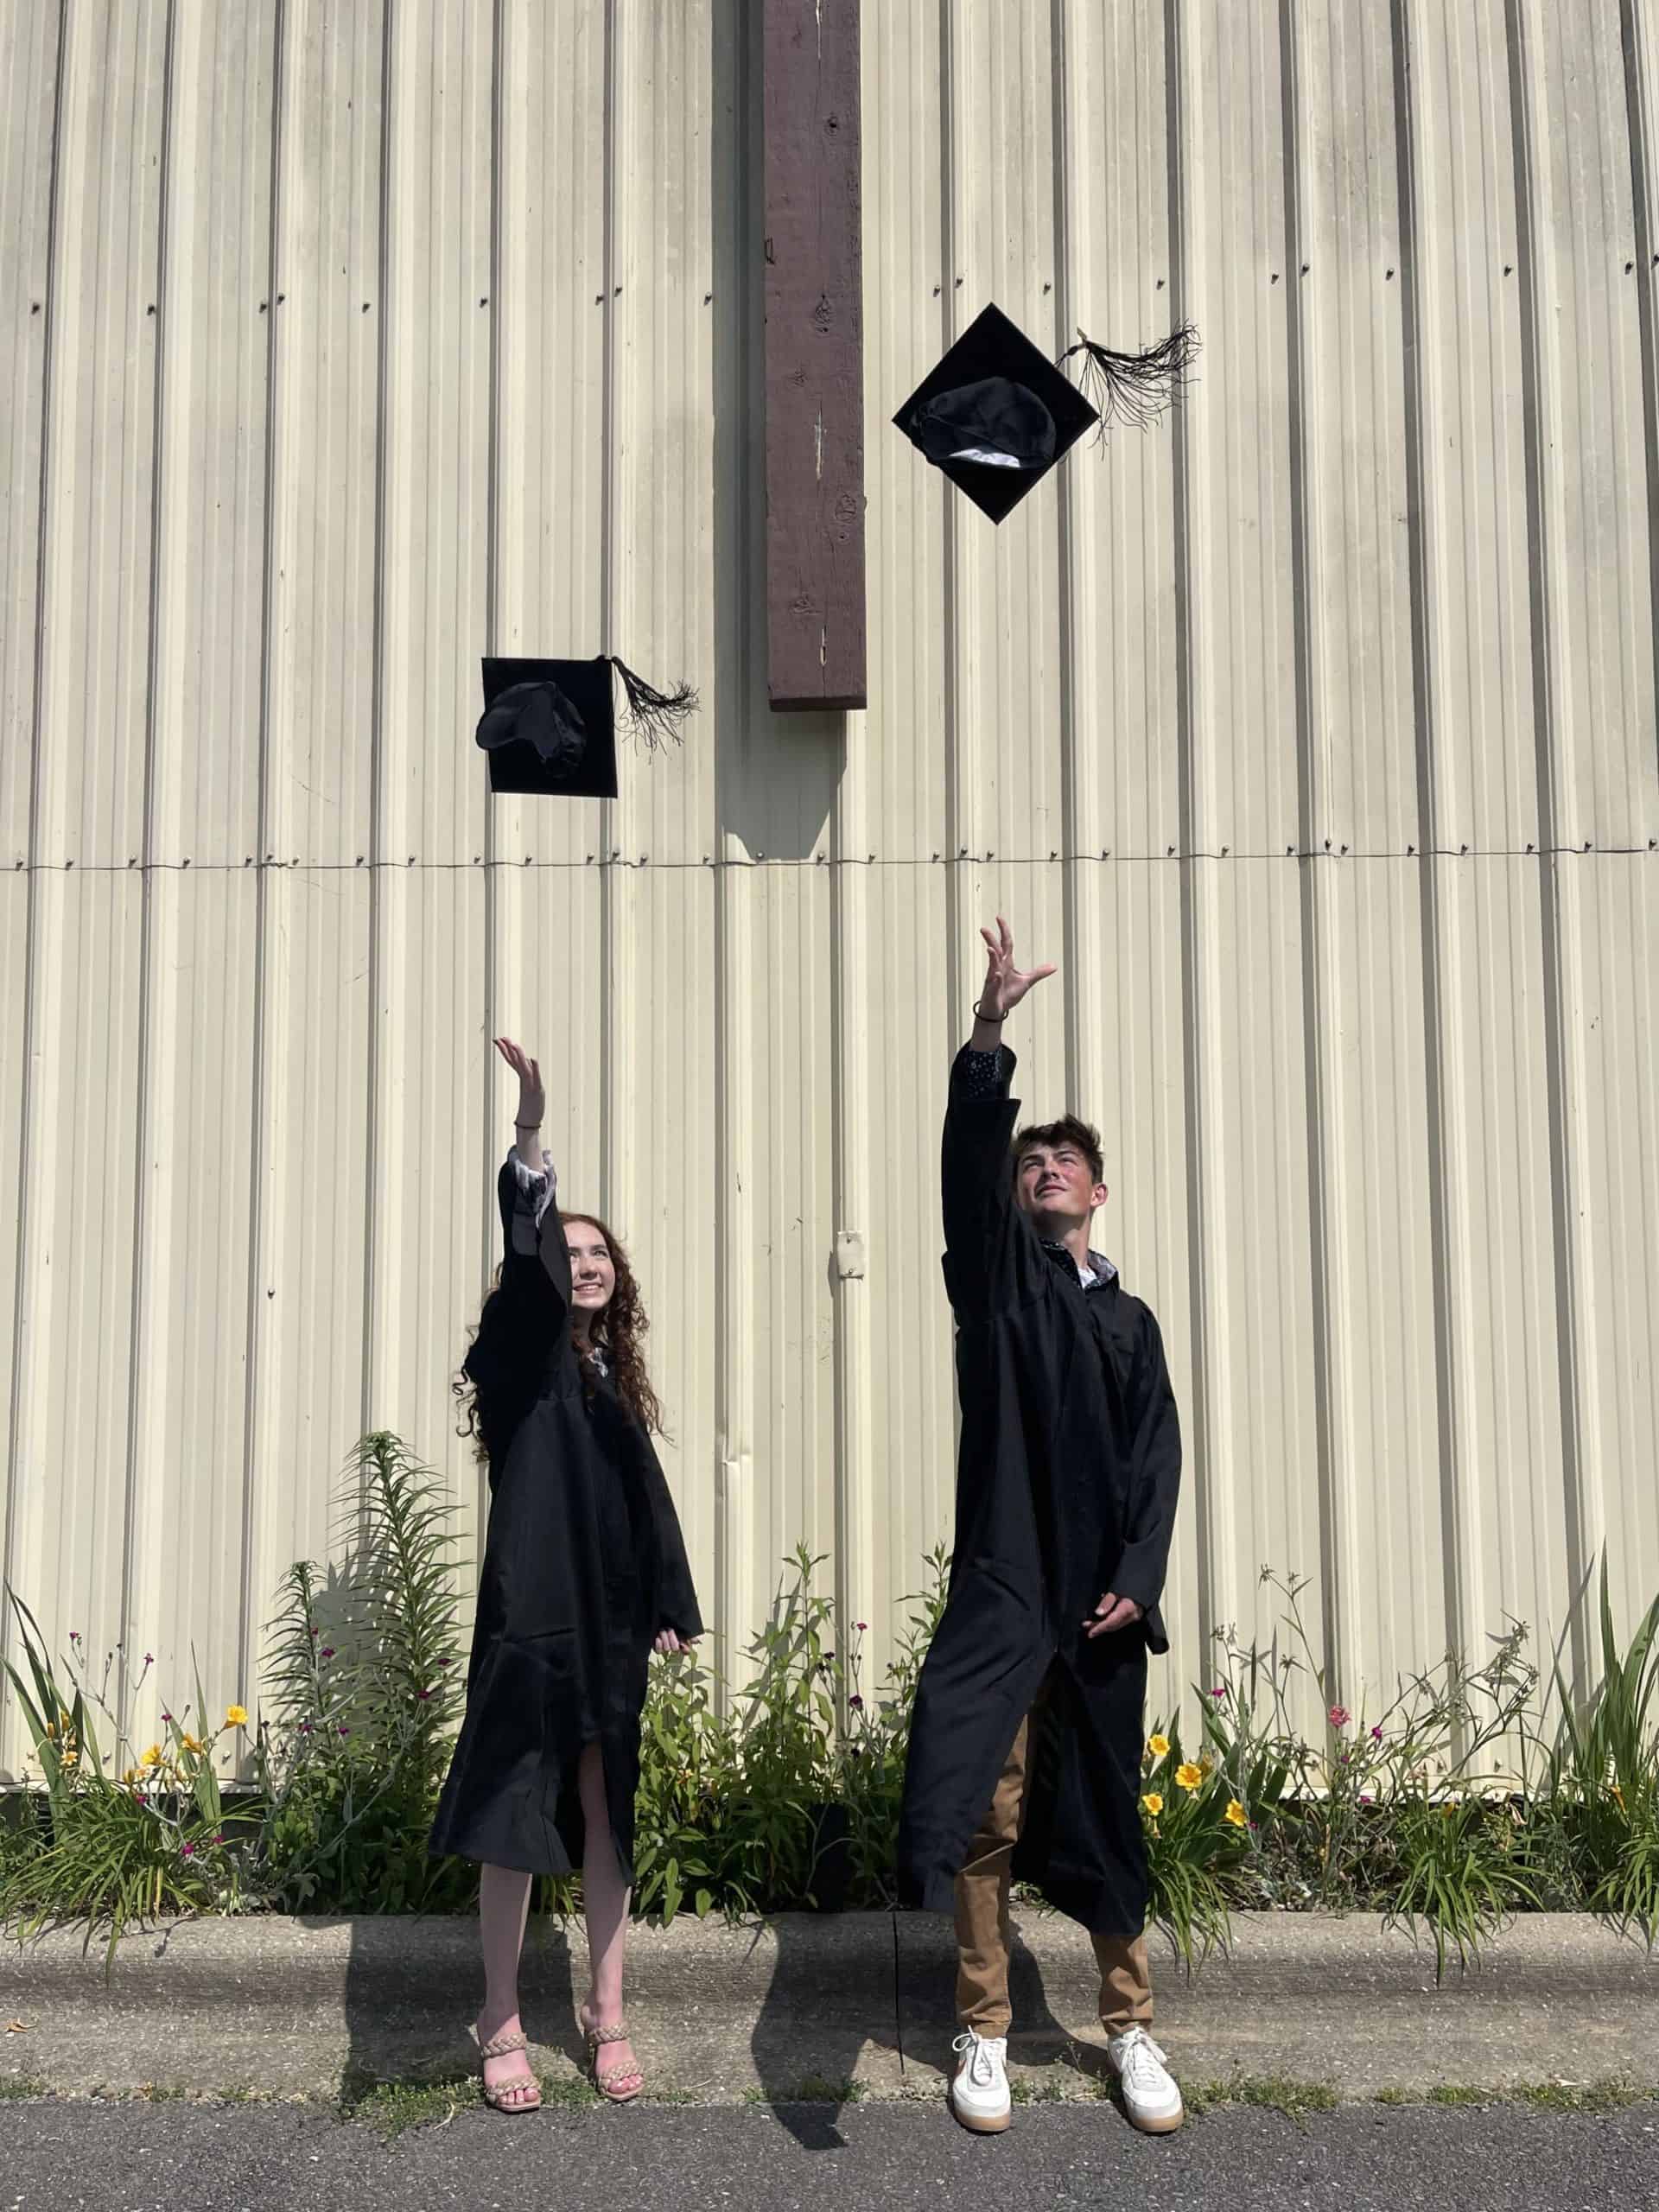 Graduates throwing cap in air